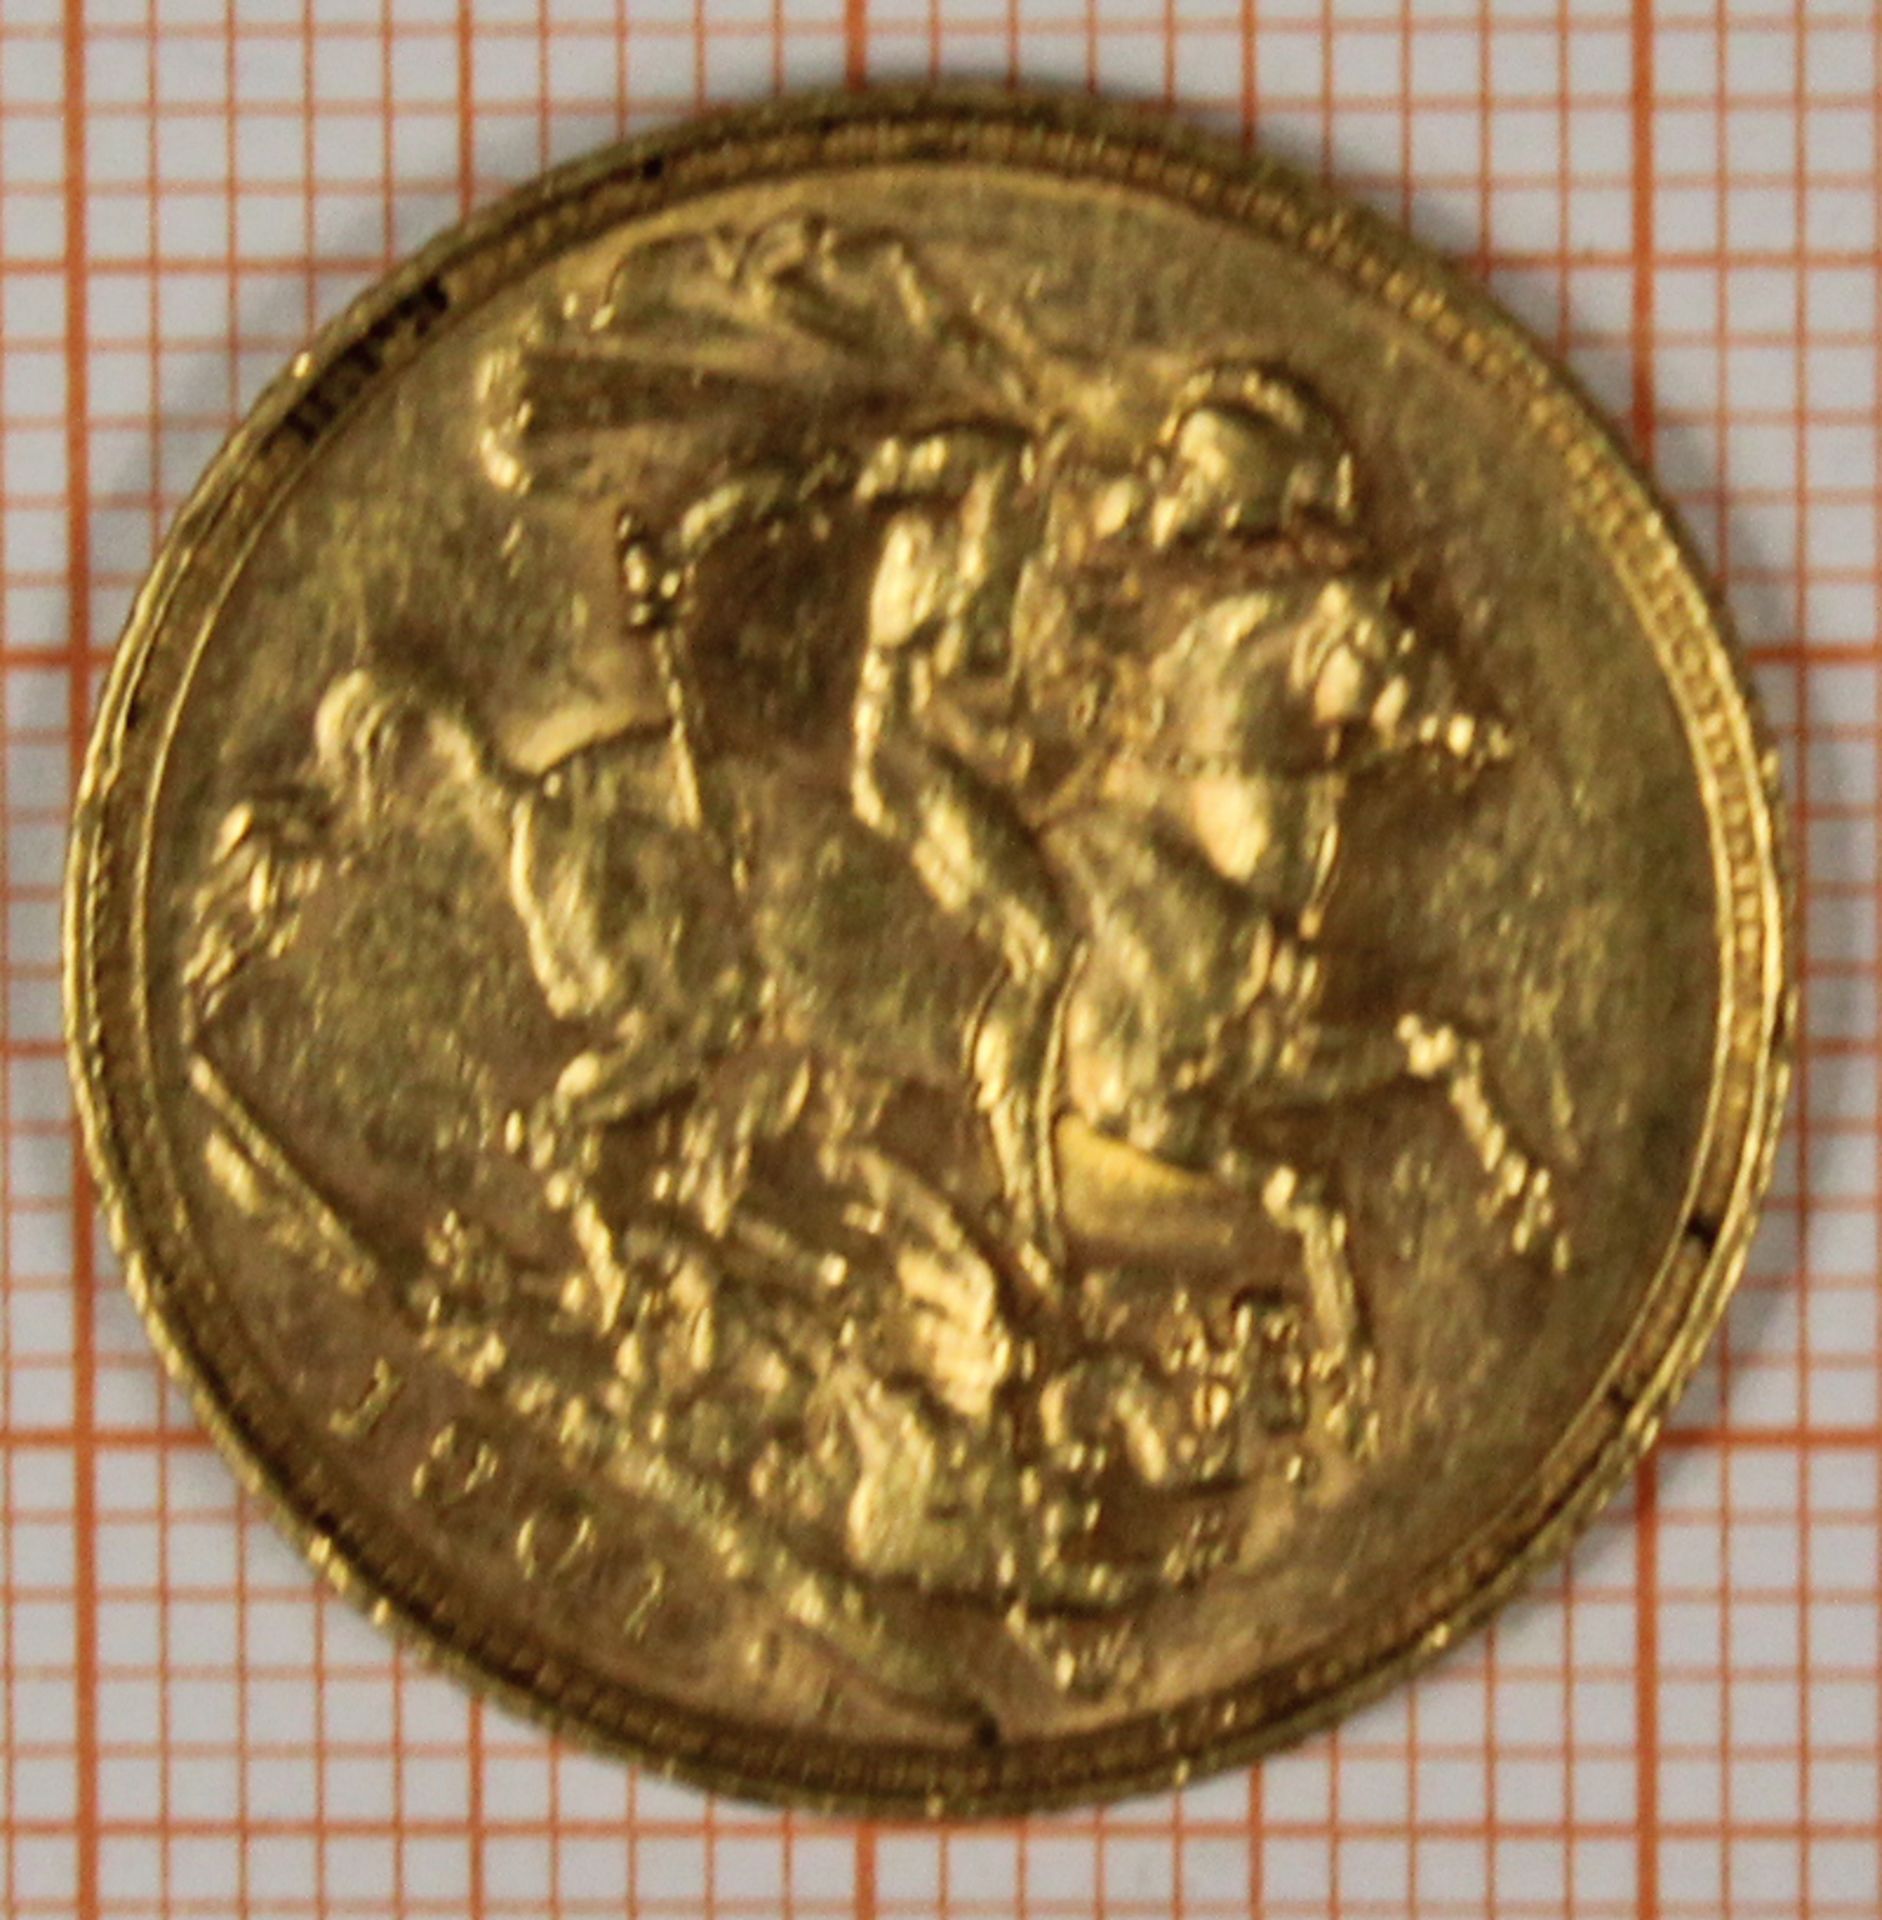 Goldmünze. 1 Sovereign. Großbritannien. Victoria. 1901. - Bild 3 aus 4